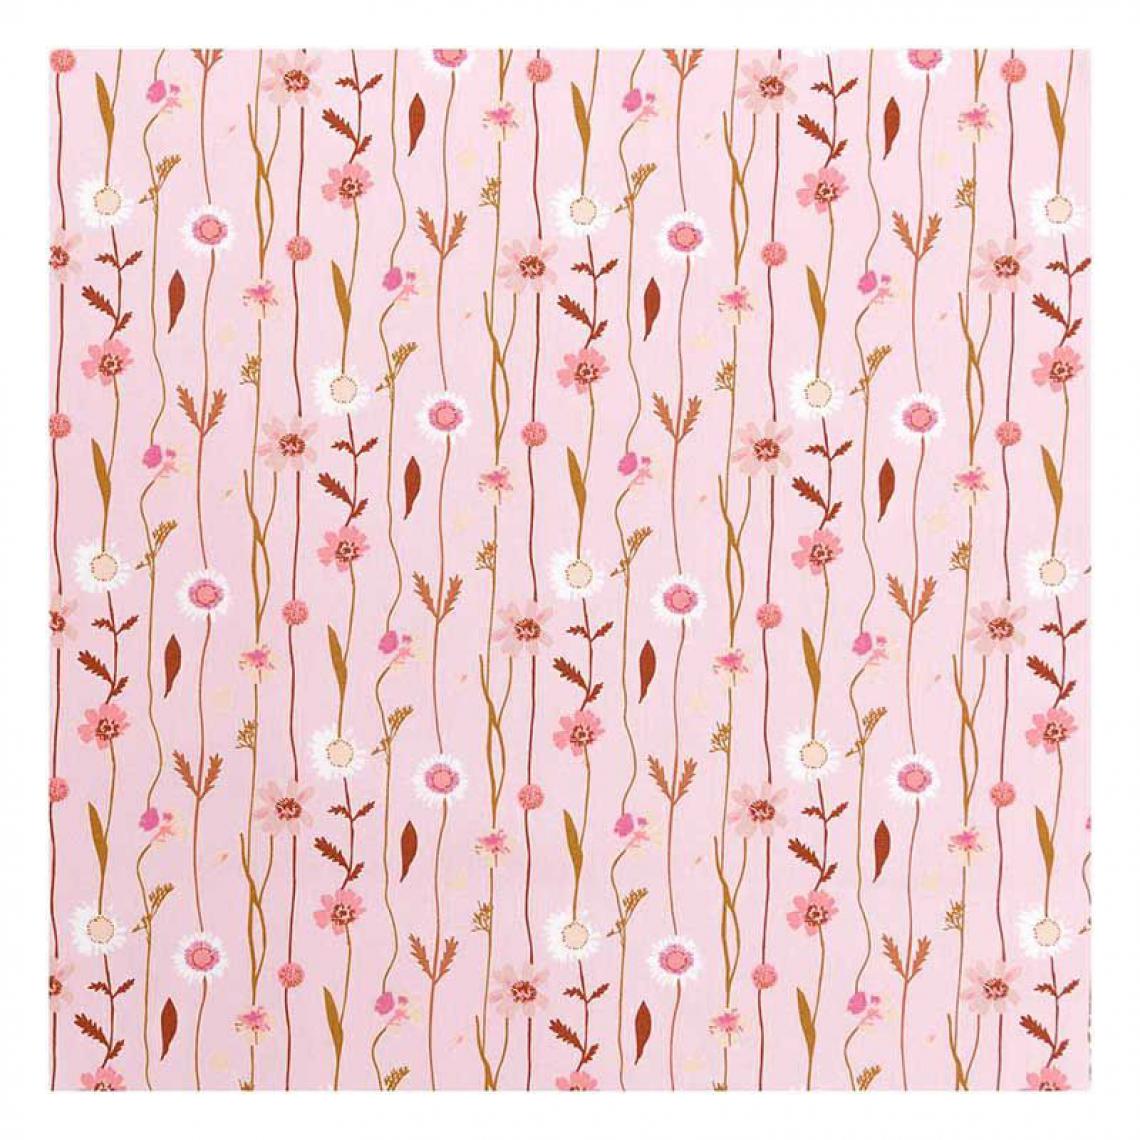 Rico - Tissu en coton fleurs des champs 50 x 140 cm - 122 g / m² - Rose - Dessin et peinture